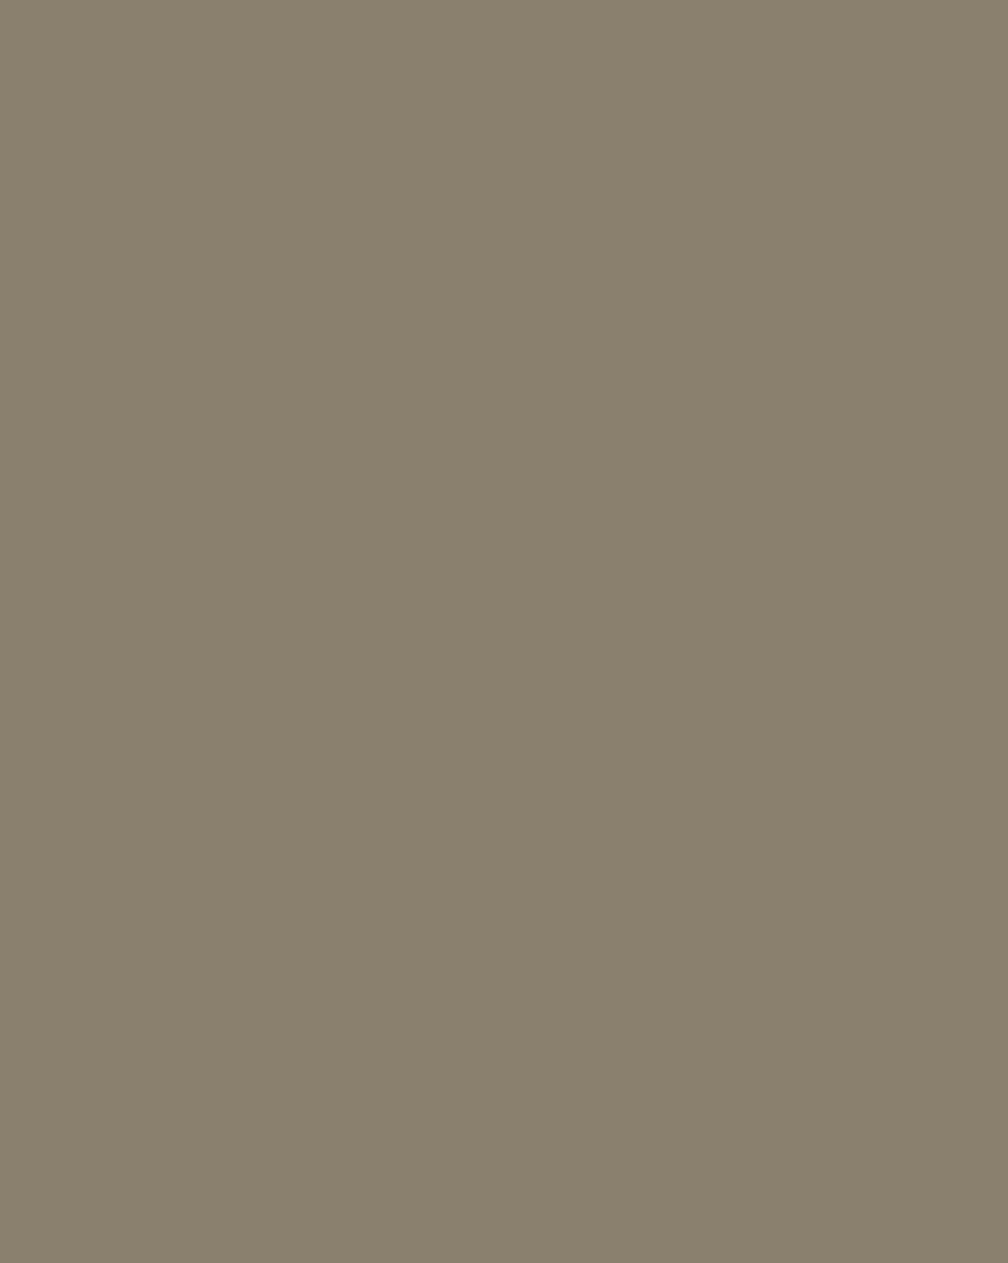 Илья Репин. Портрет писателя Всеволода Гаршина (фрагмент). 1884. Метрополитен-музей, Нью-Йорк, США